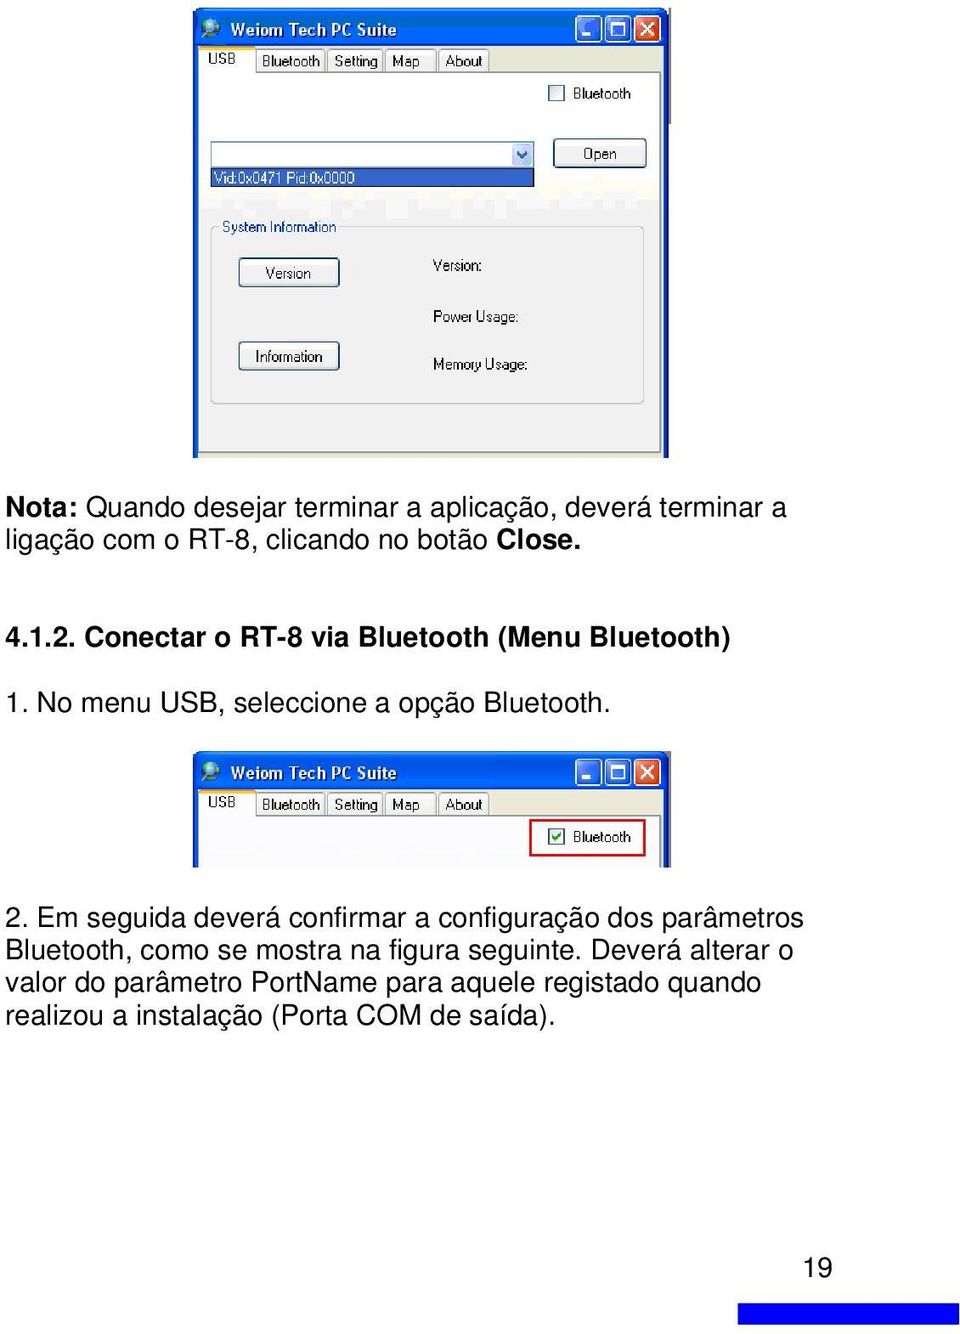 Em seguida deverá confirmar a configuração dos parâmetros Bluetooth, como se mostra na figura seguinte.